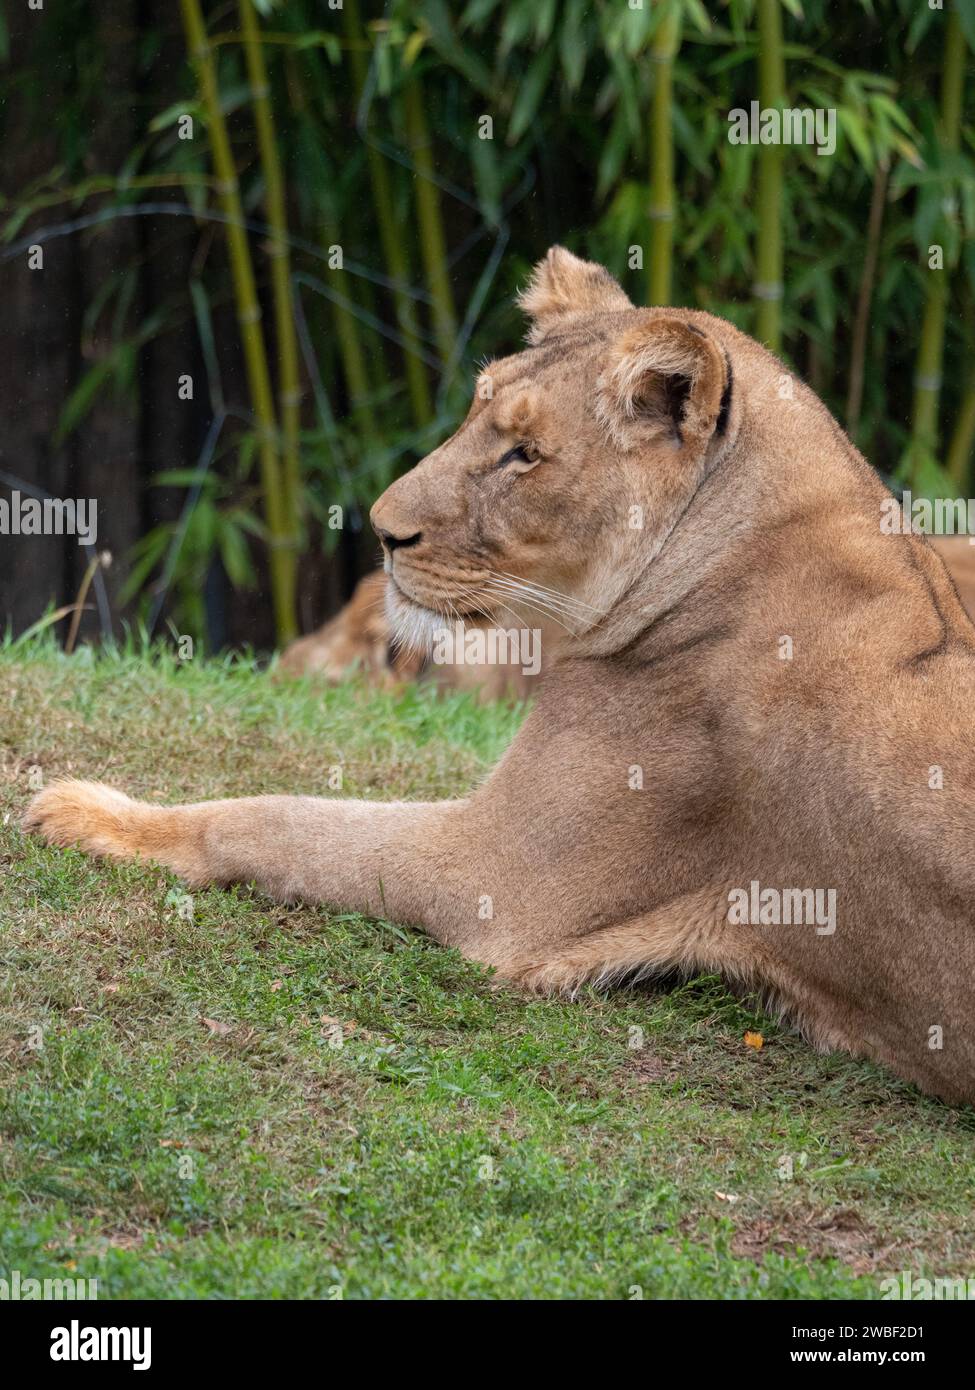 Ein junger Löwe, der auf einer grasbewachsenen Wiese liegt, sein majestätisches Fell wird vom warmen Sonnenlicht beleuchtet Stockfoto